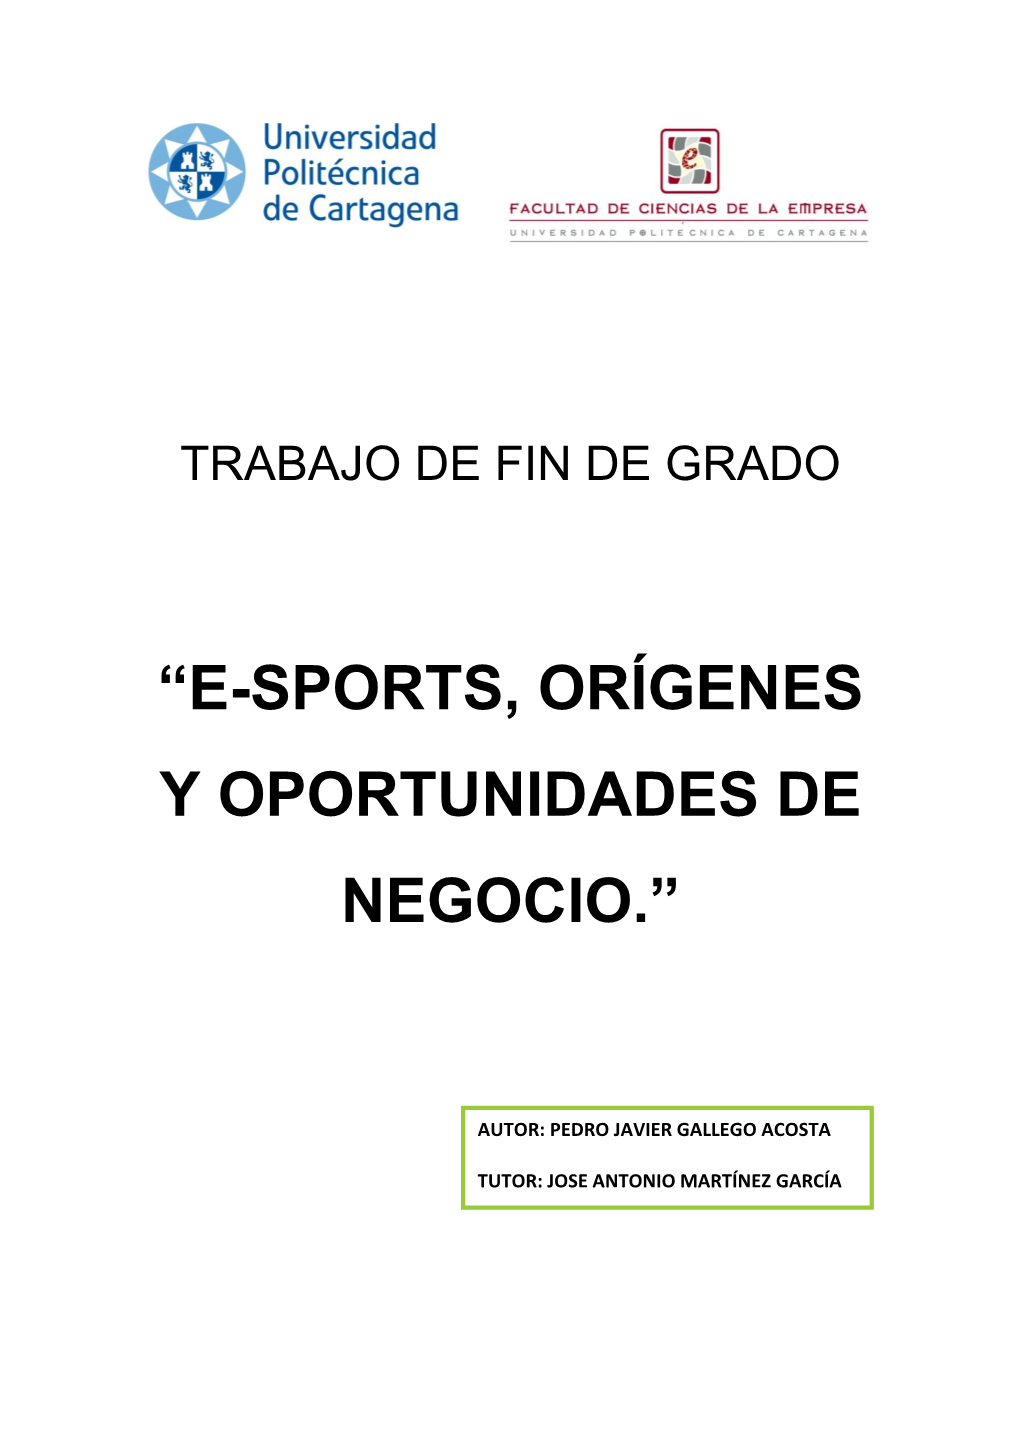 “E-Sports, Orígenes Y Oportunidades De Negocio.”